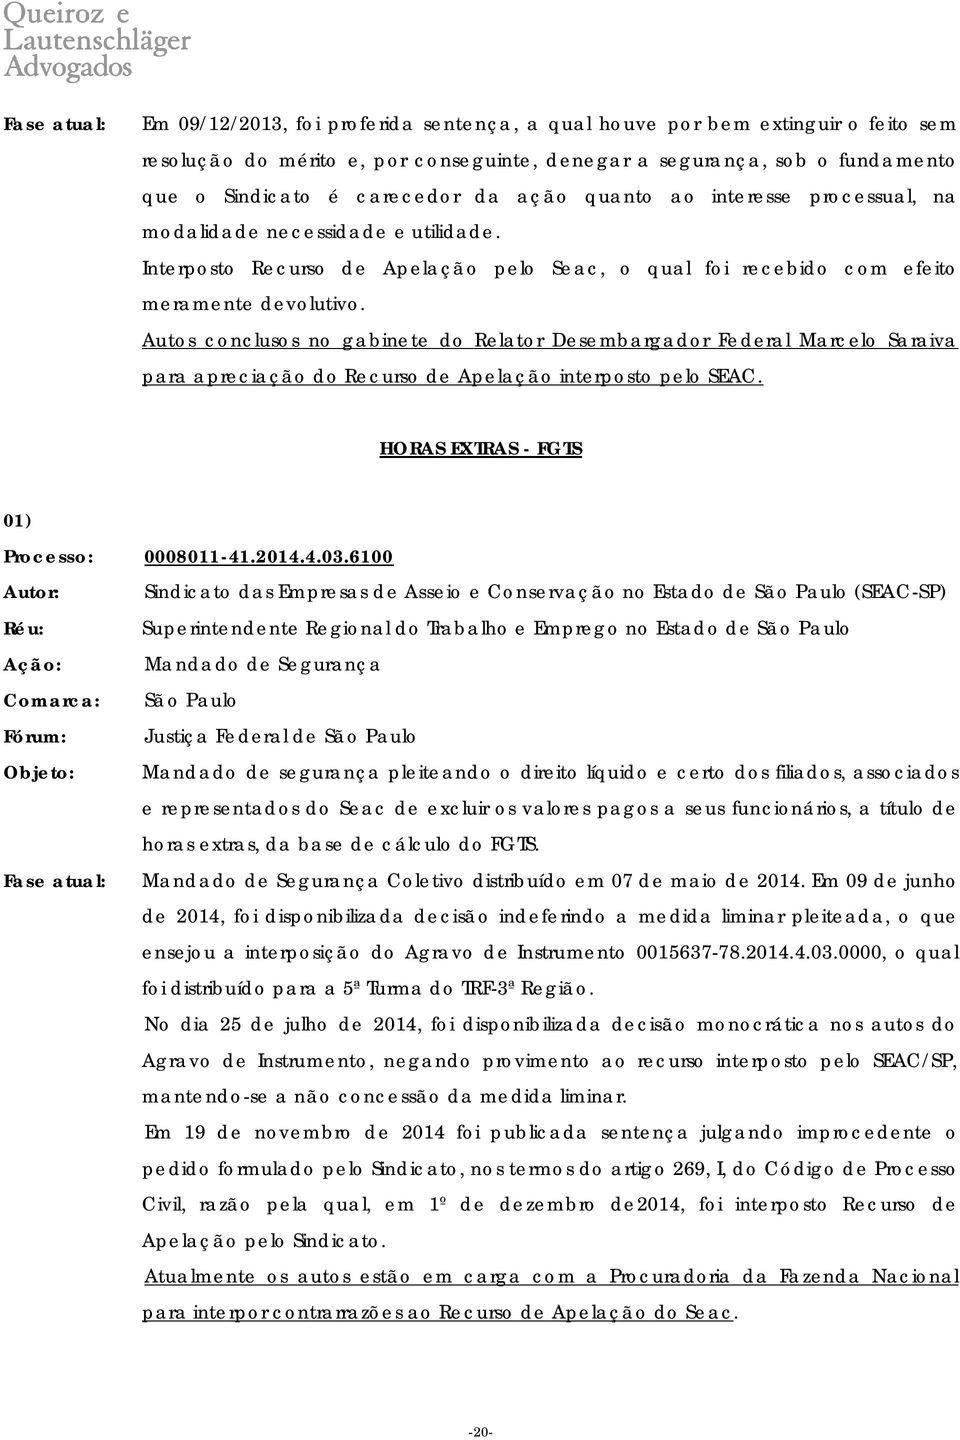 Autos conclusos no gabinete do Relator Desembargador Federal Marcelo Saraiva para apreciação do Recurso de Apelação interposto pelo SEAC. HORAS EXTRAS - FGTS 01) Processo: 0008011-41.2014.4.03.